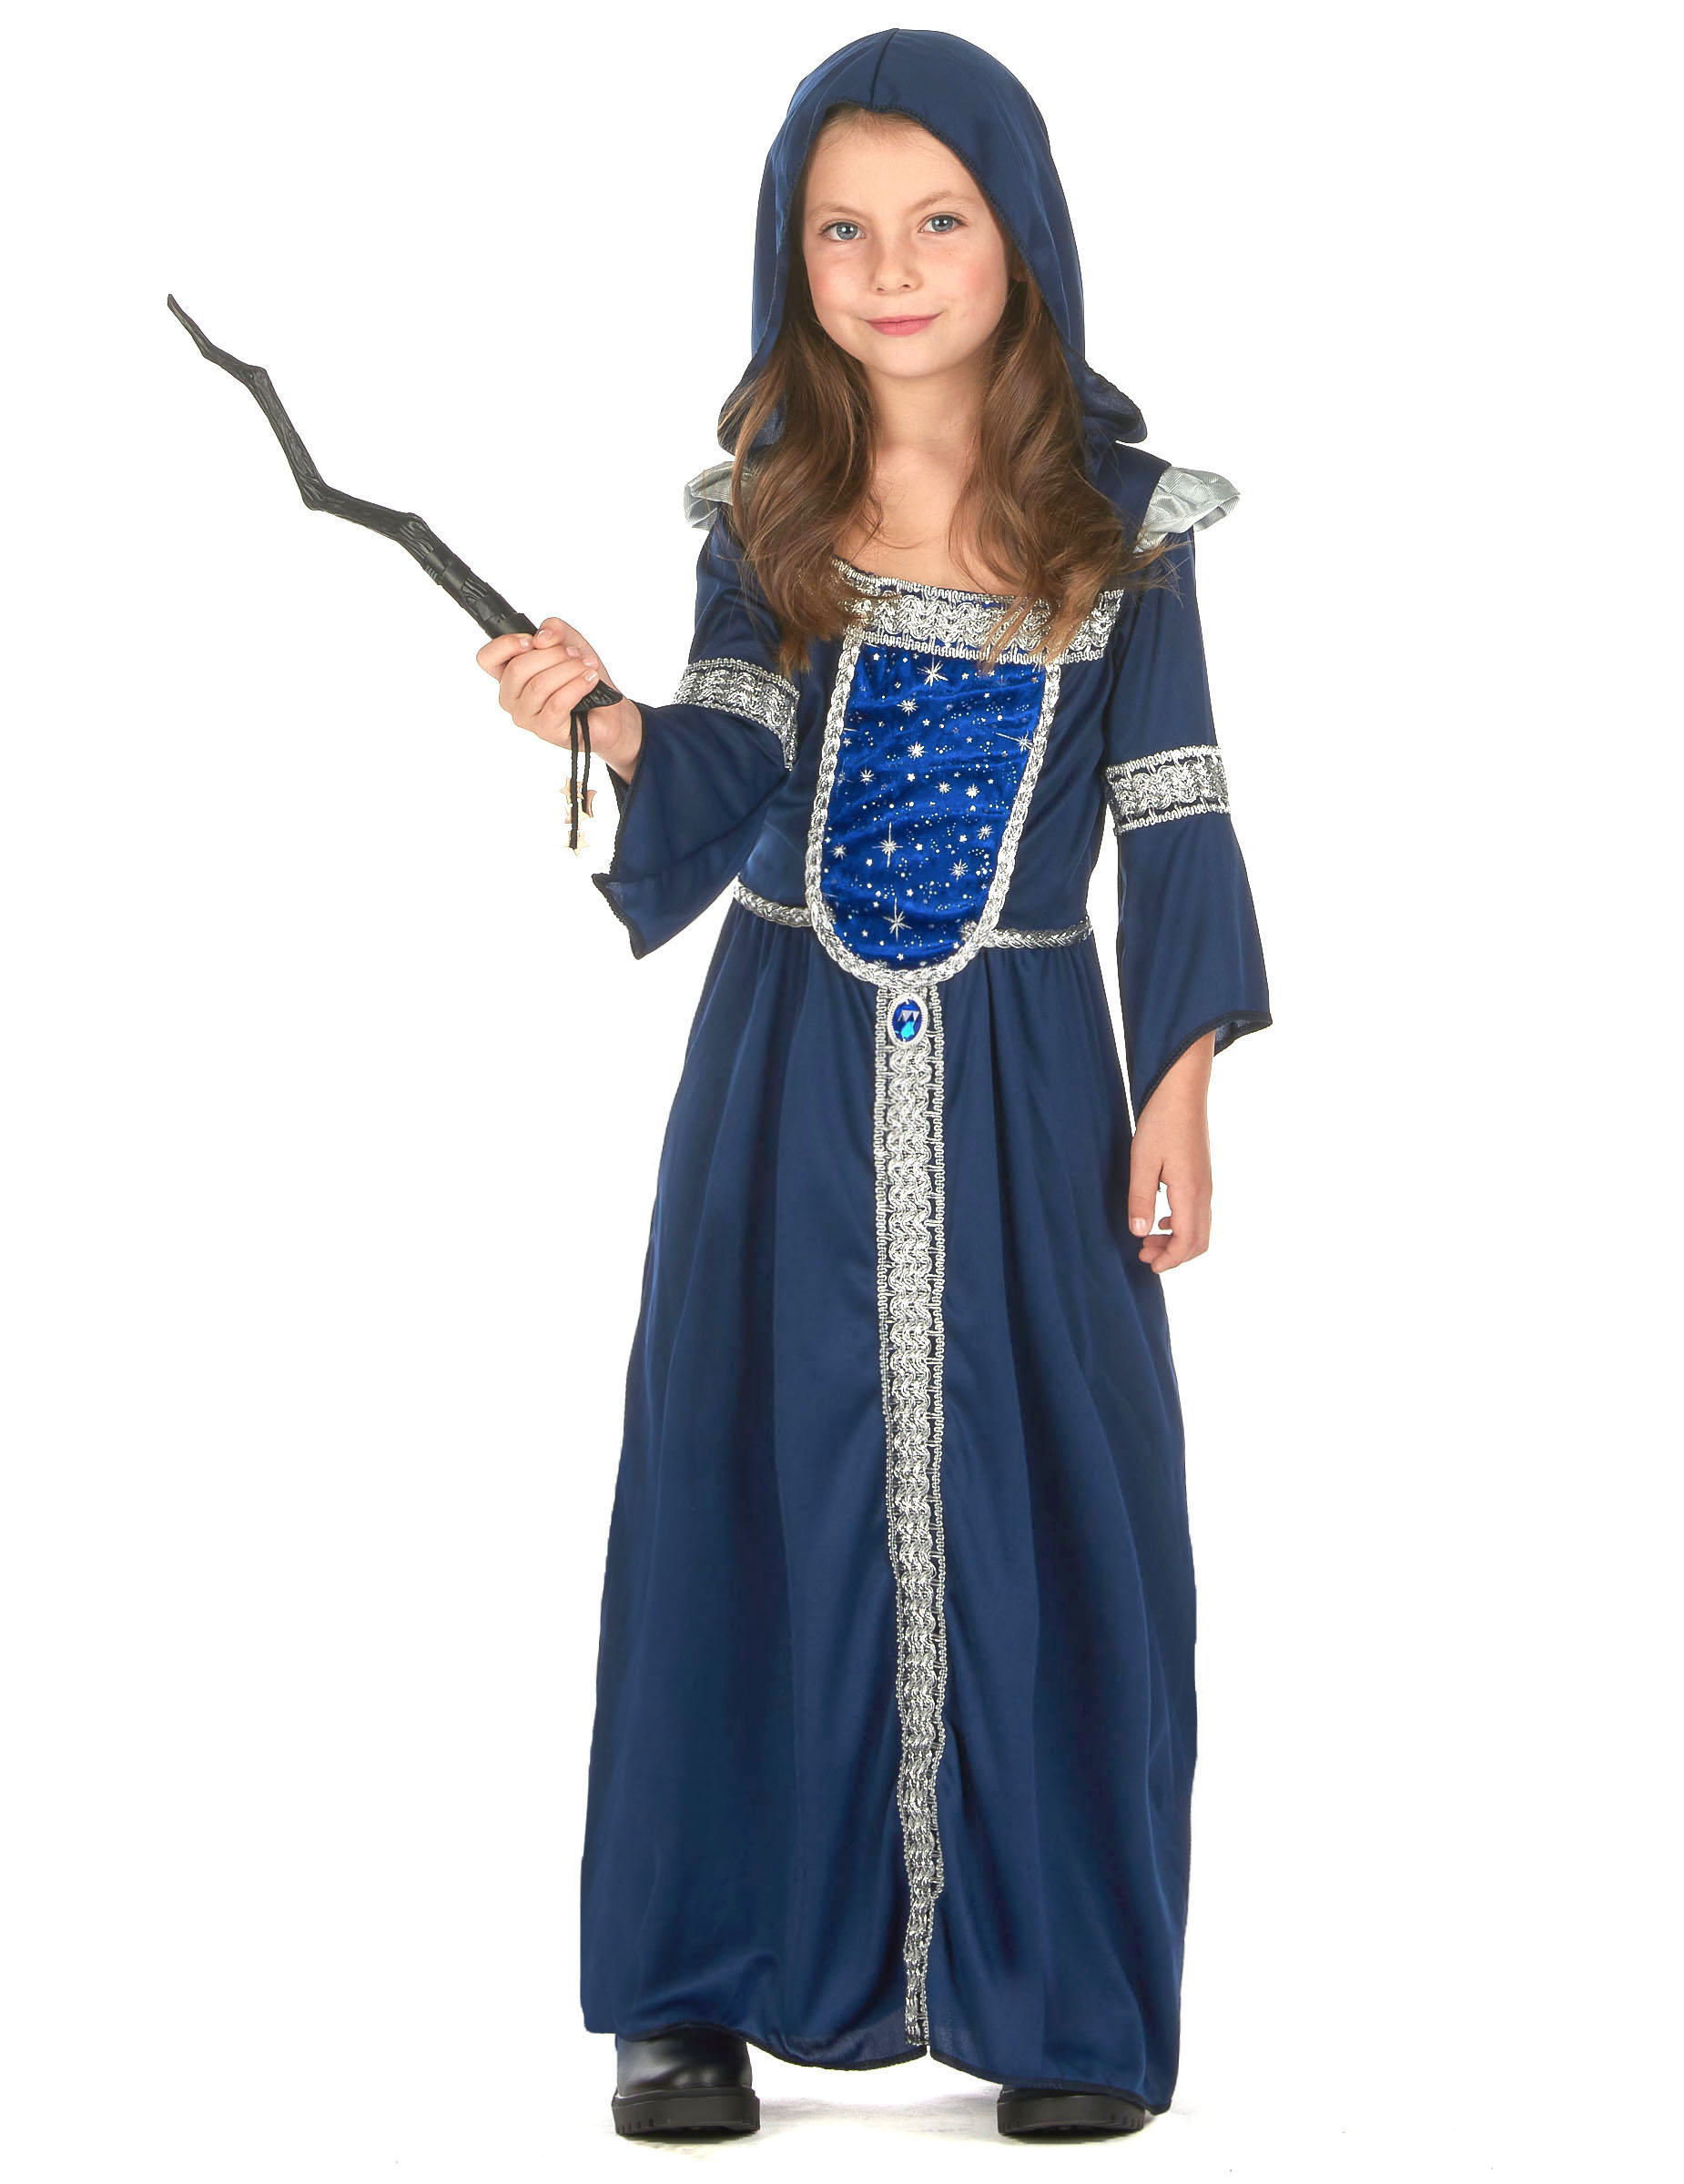 Déguisement Chevalier bleu 140cm-Costume enfant pas cher